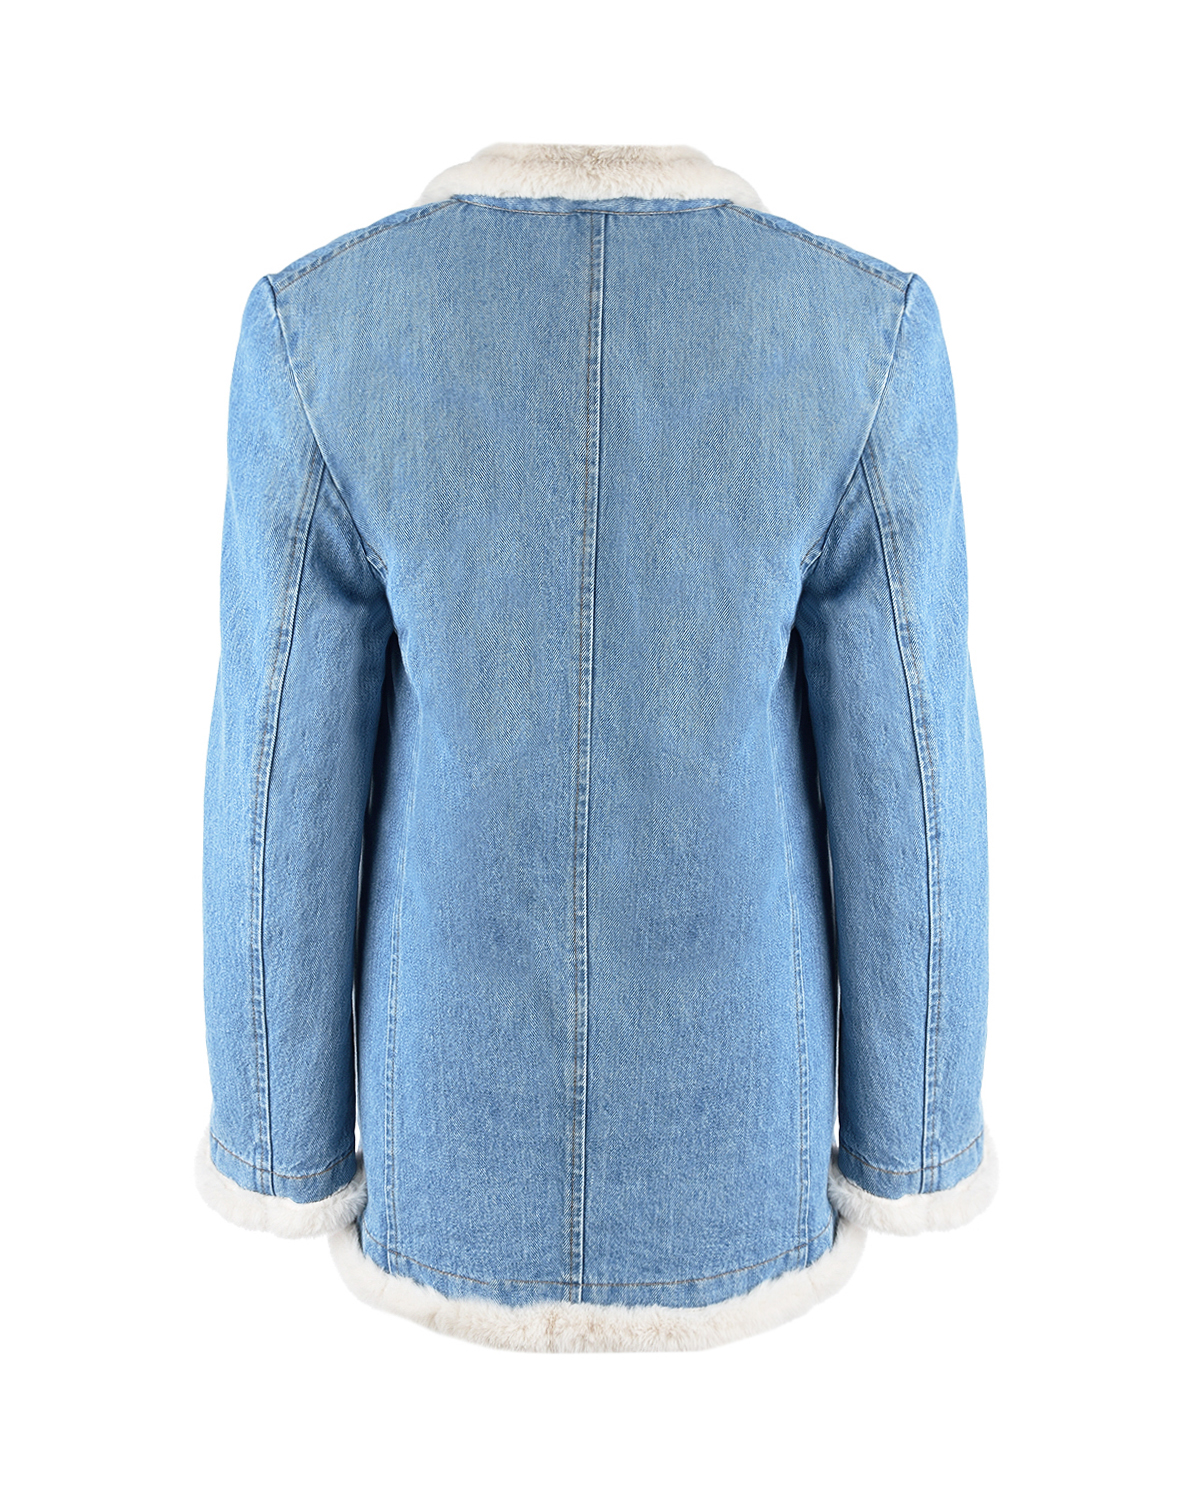 Джинсовая куртка с эко-мехом Forte dei Marmi Couture, размер 40, цвет голубой - фото 5